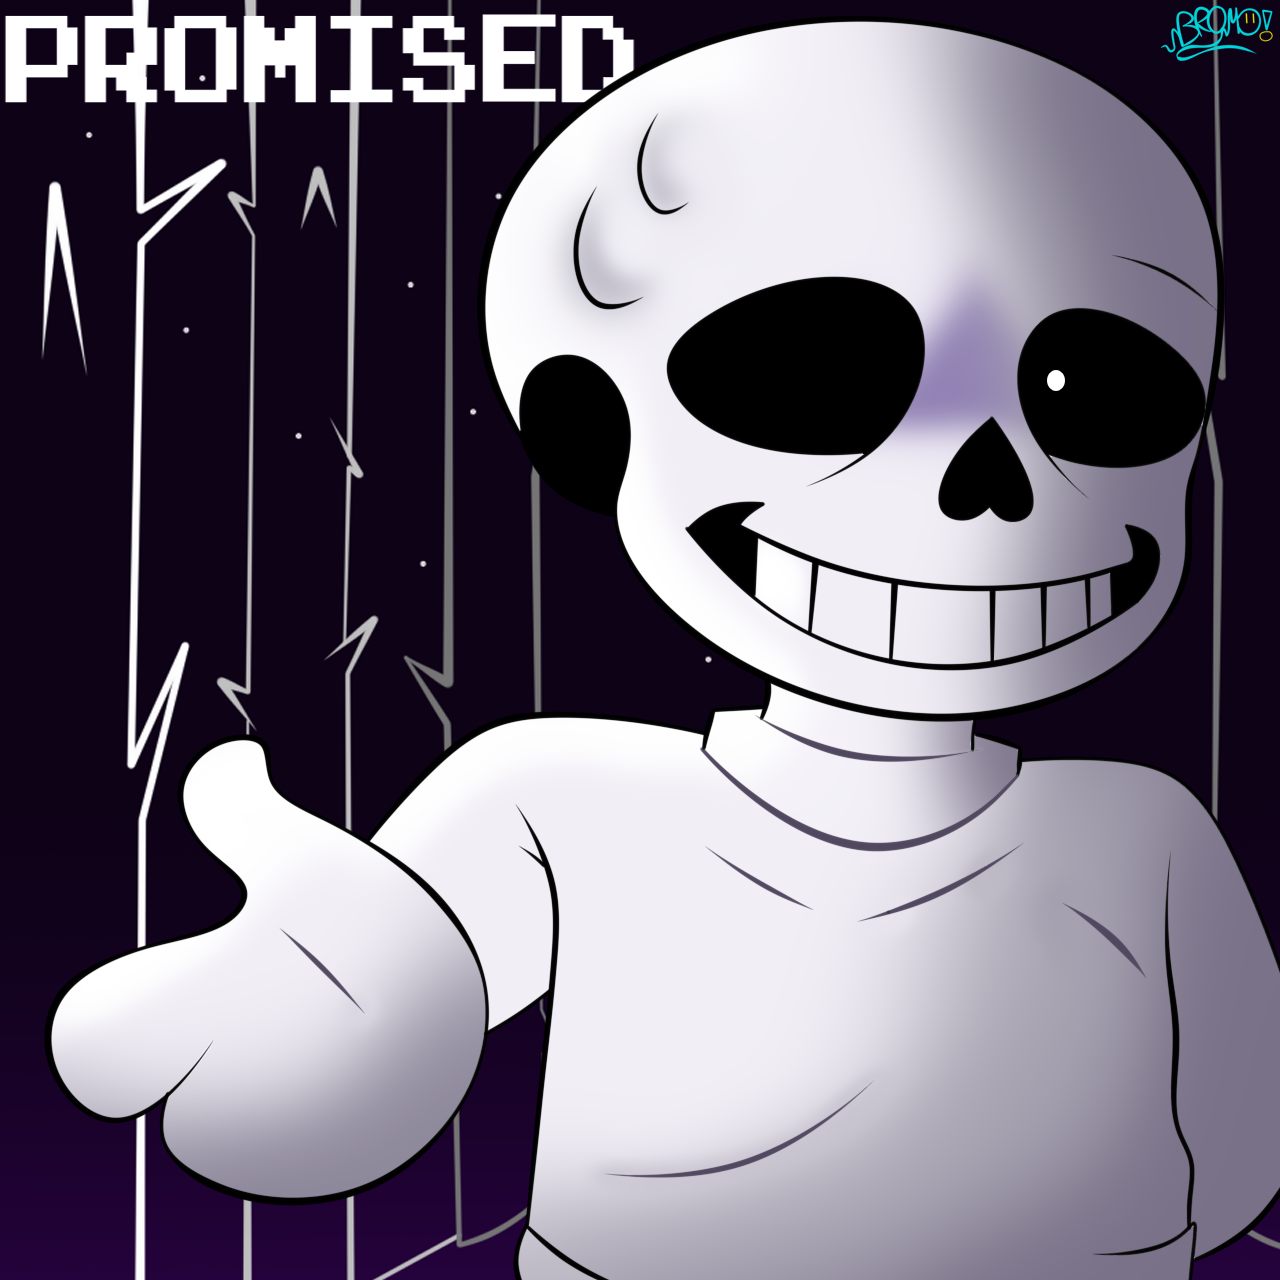 Promised Sans V3 by bromomento4657 on DeviantArt